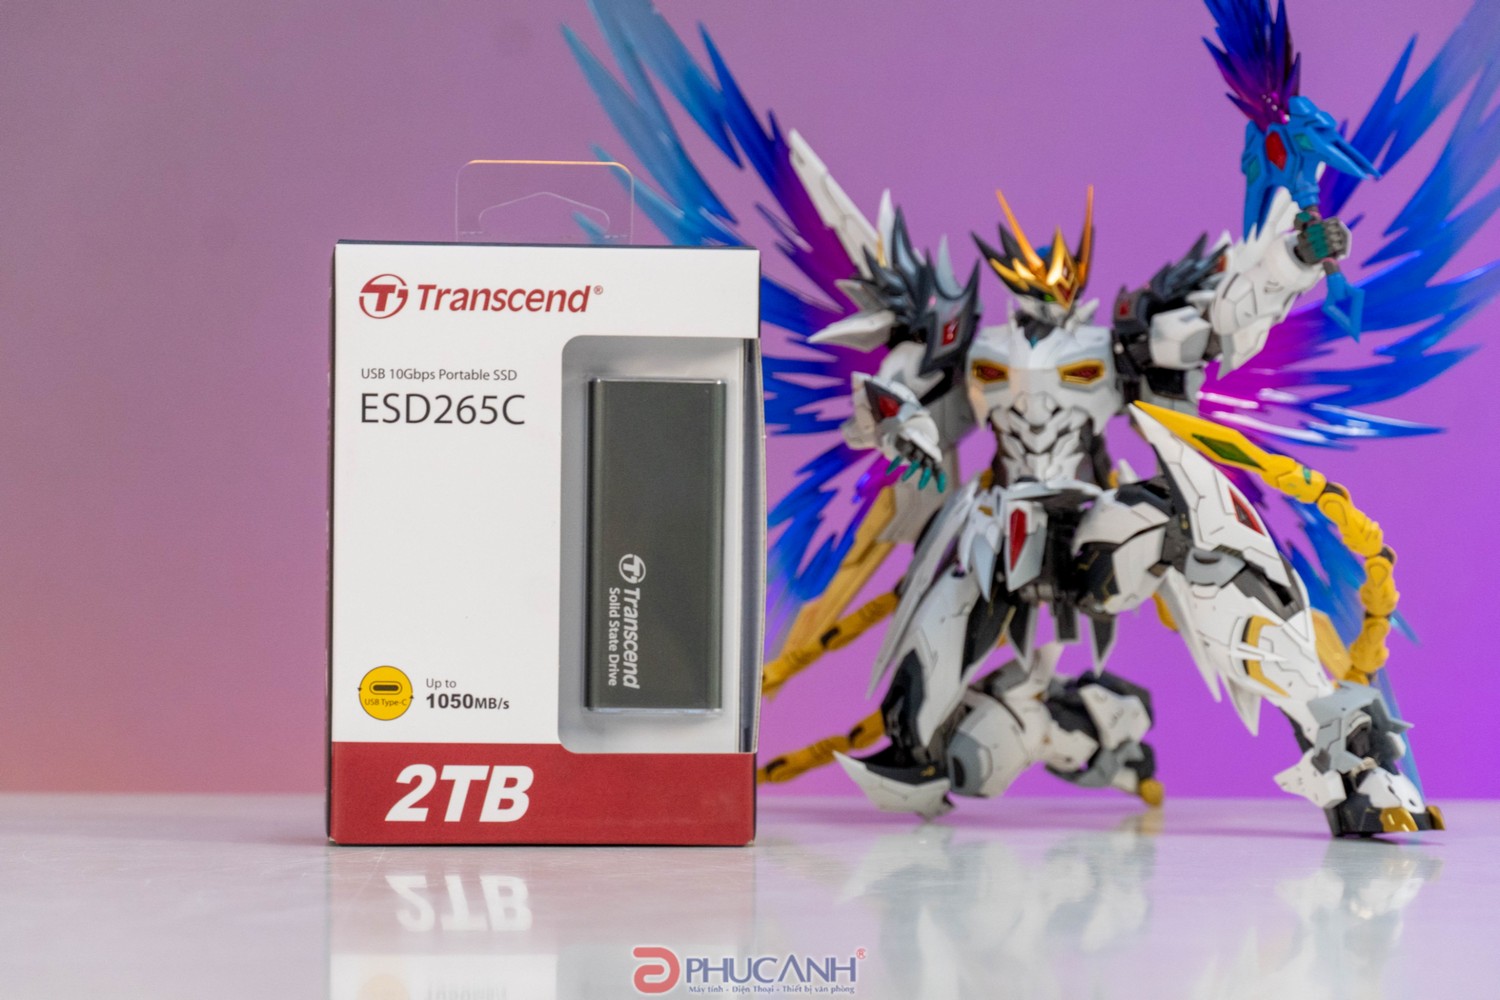 Review Ổ cứng di động SSD Transcend ESD265C - Nhỏ gọn, vỏ kim loại chắc chắn, tốc độ nhanh chóng